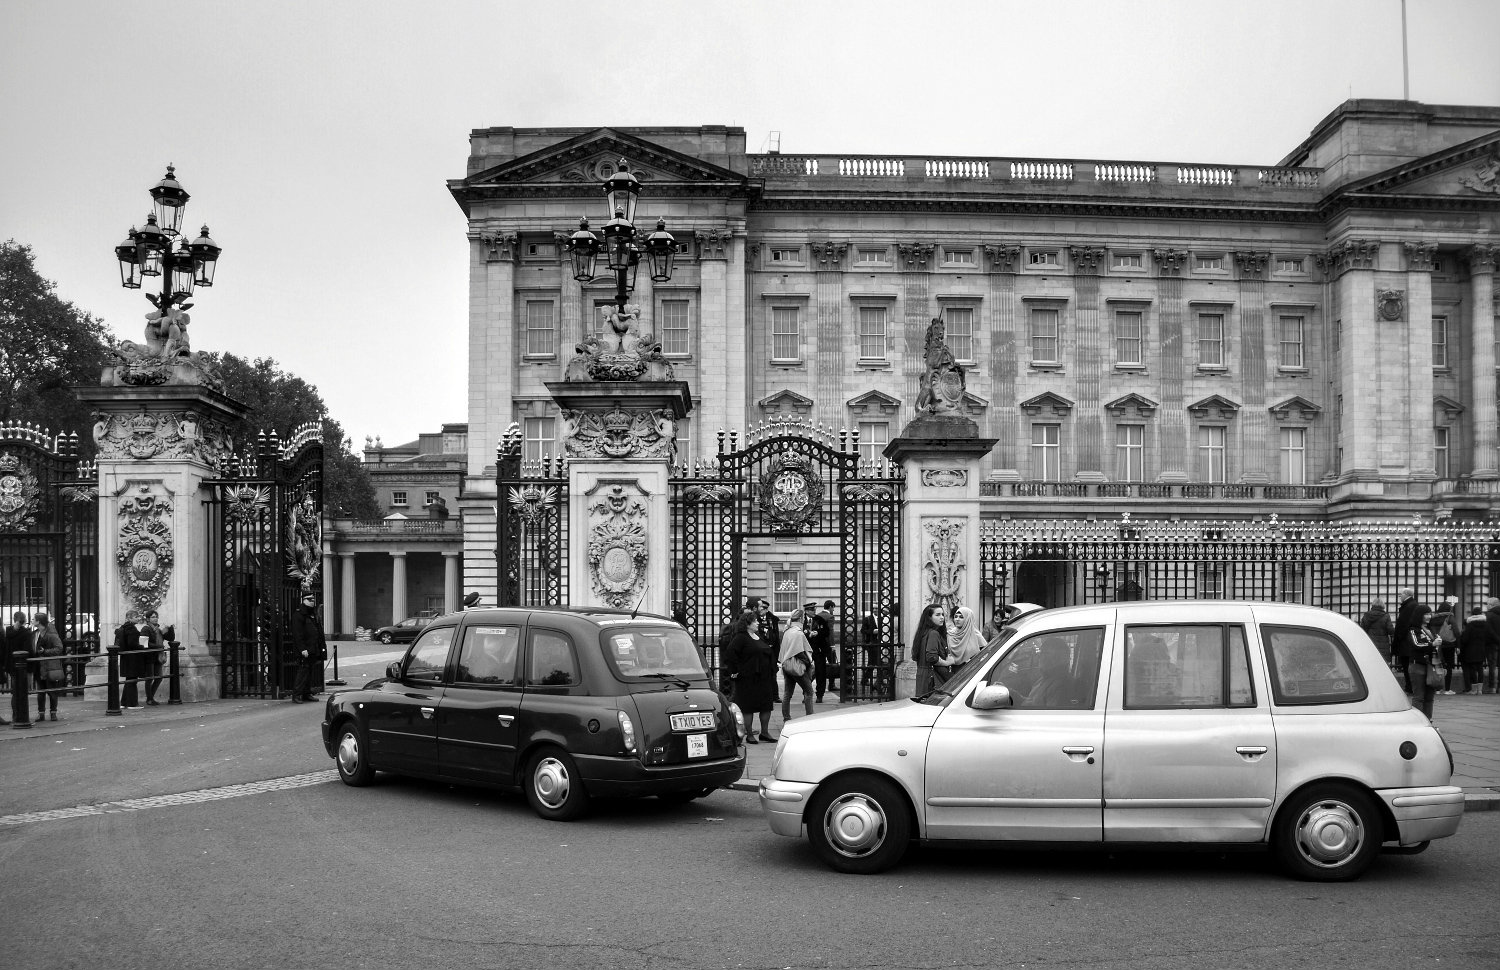 Entrance to Buckingham Palace...